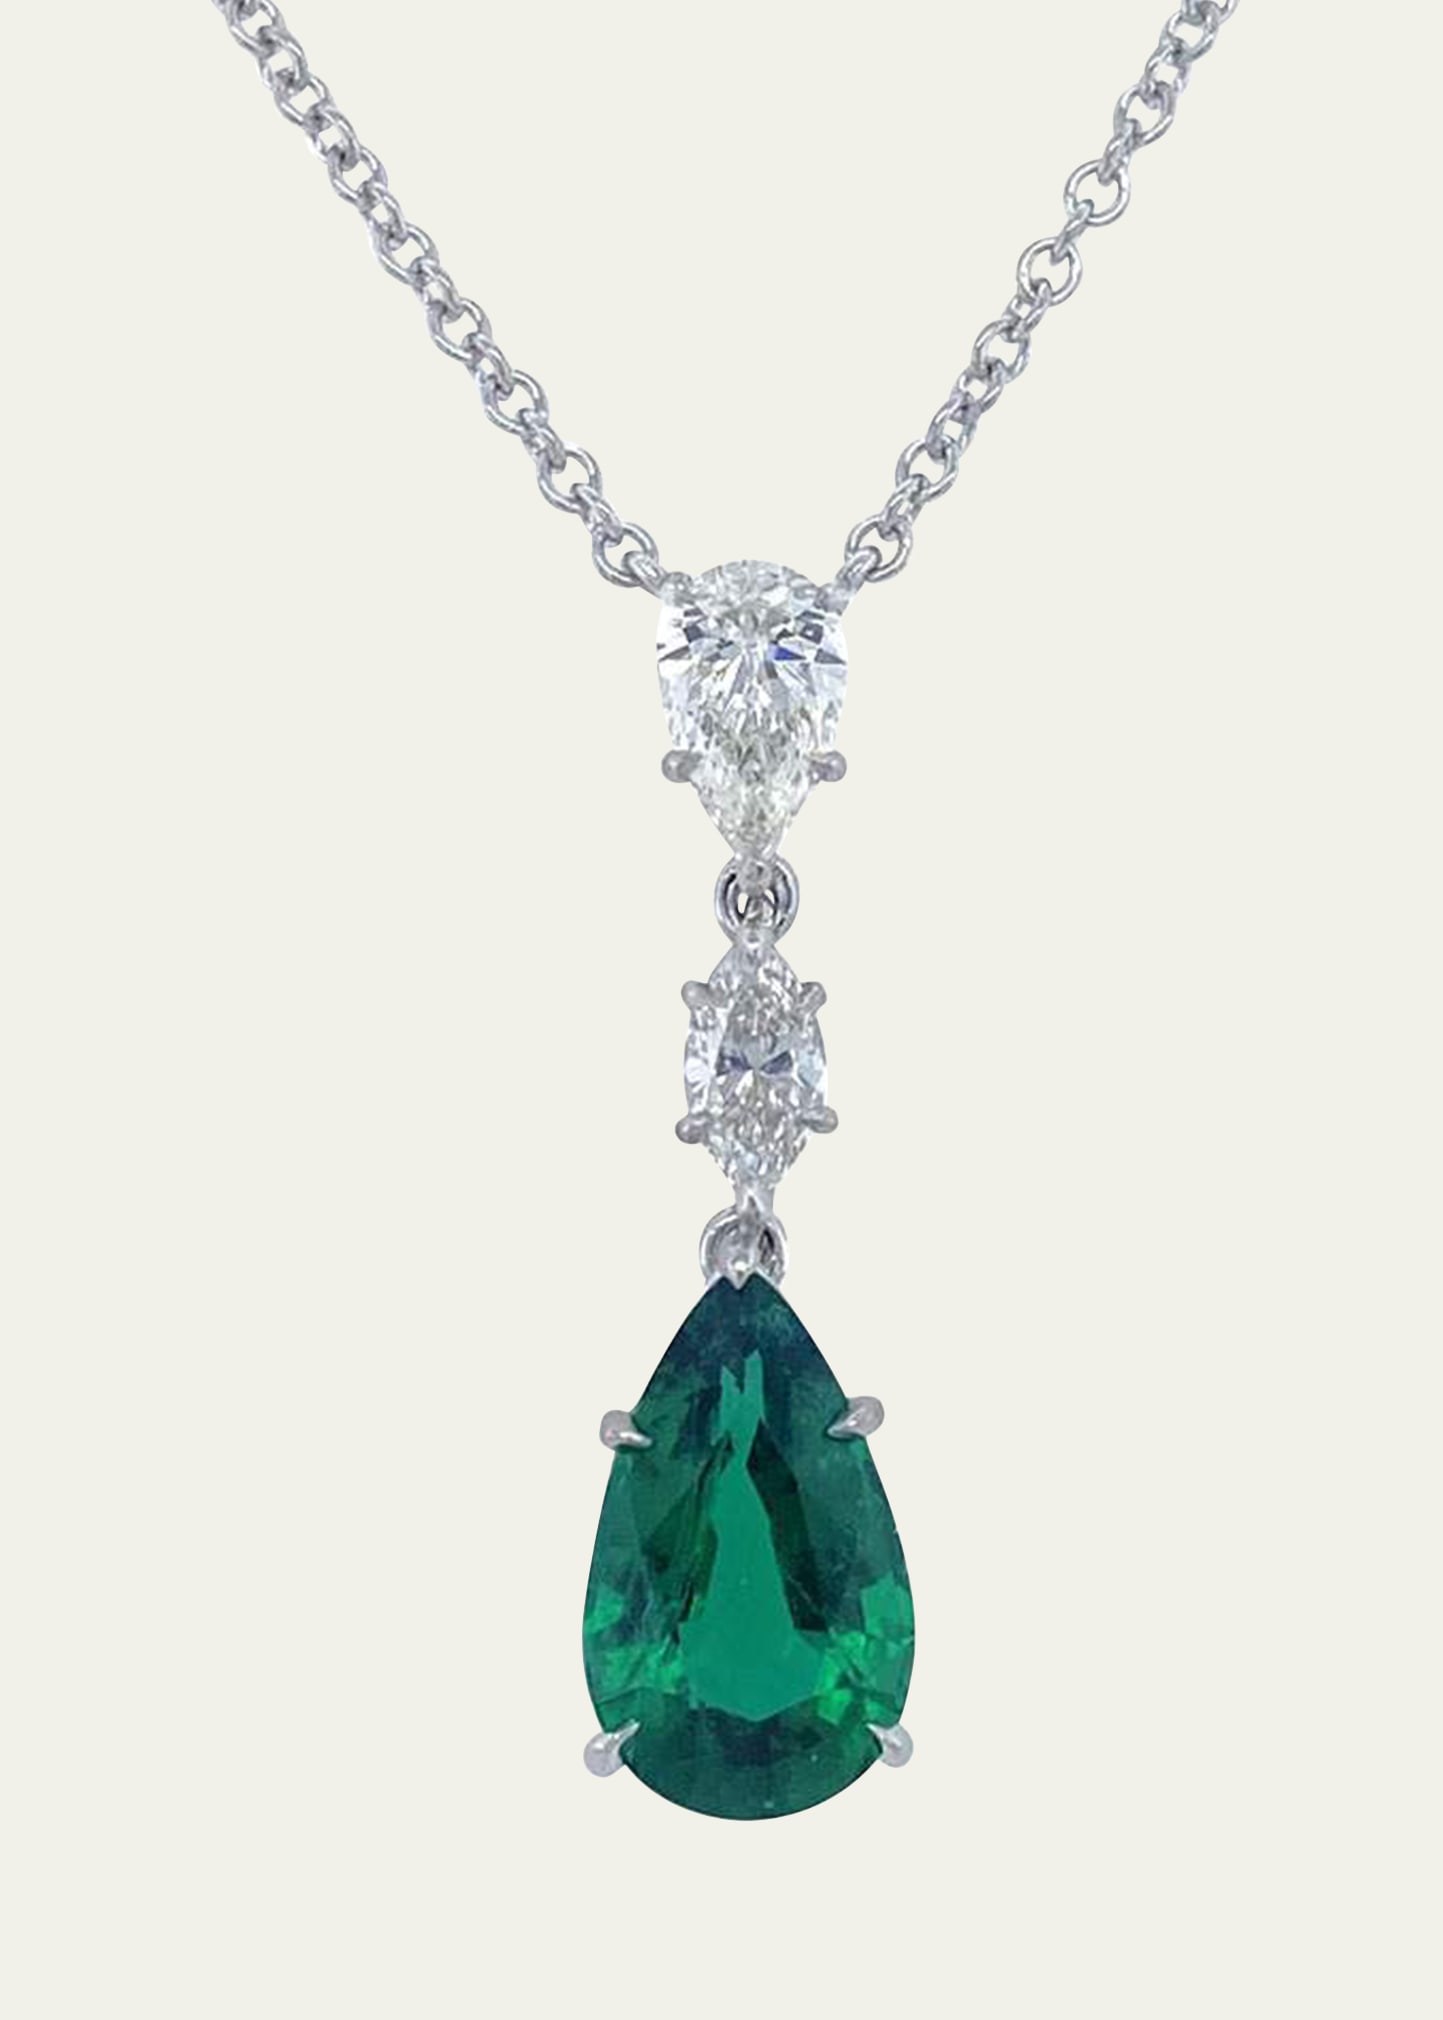 Bayco Platinum Pendant With Zambian Emerald and Diamonds